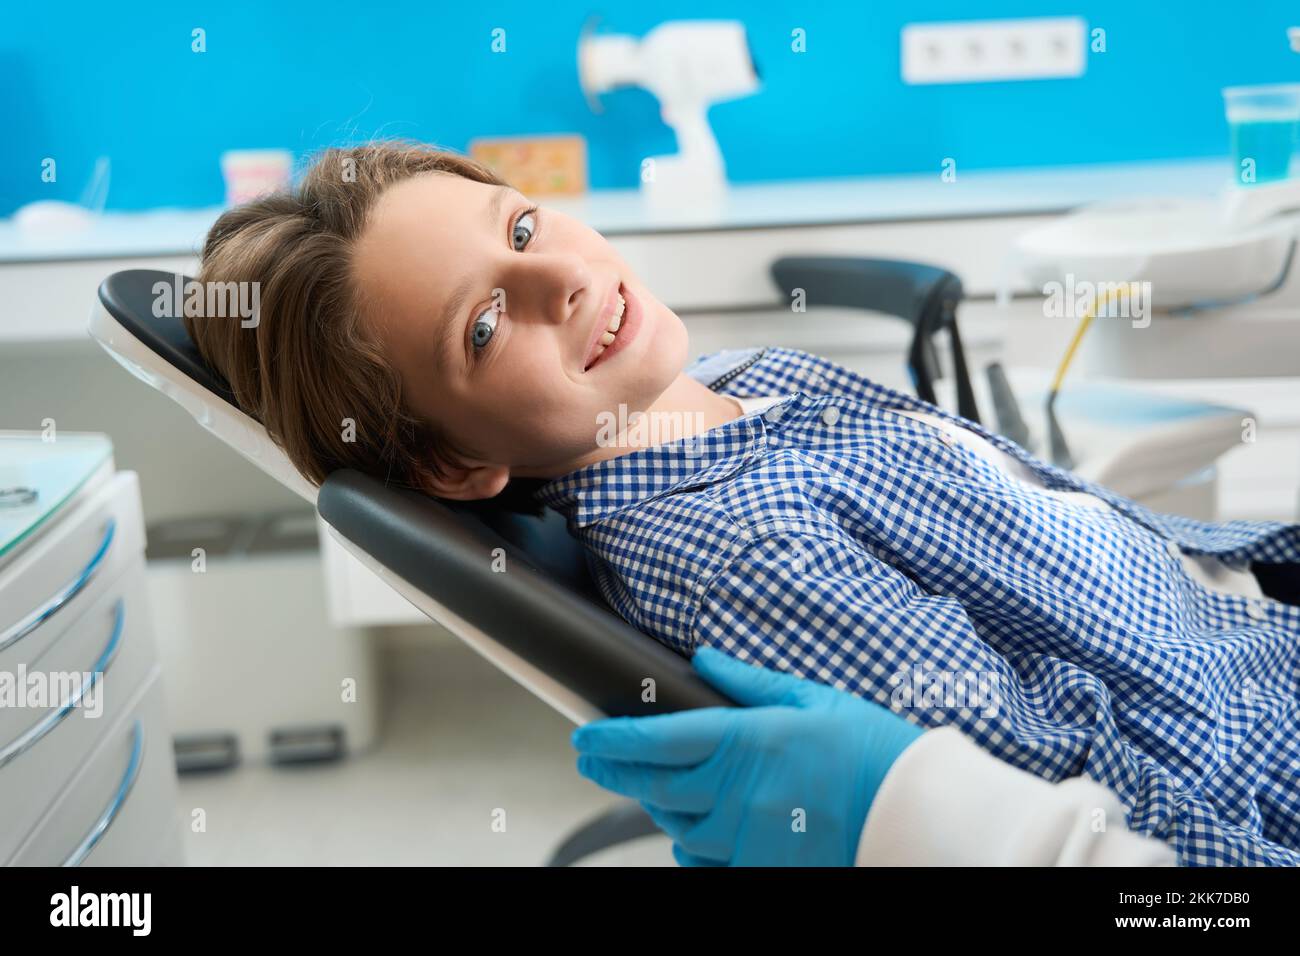 Sorridente adolescente si siede in una sedia dentale tra attrezzature speciali Foto Stock